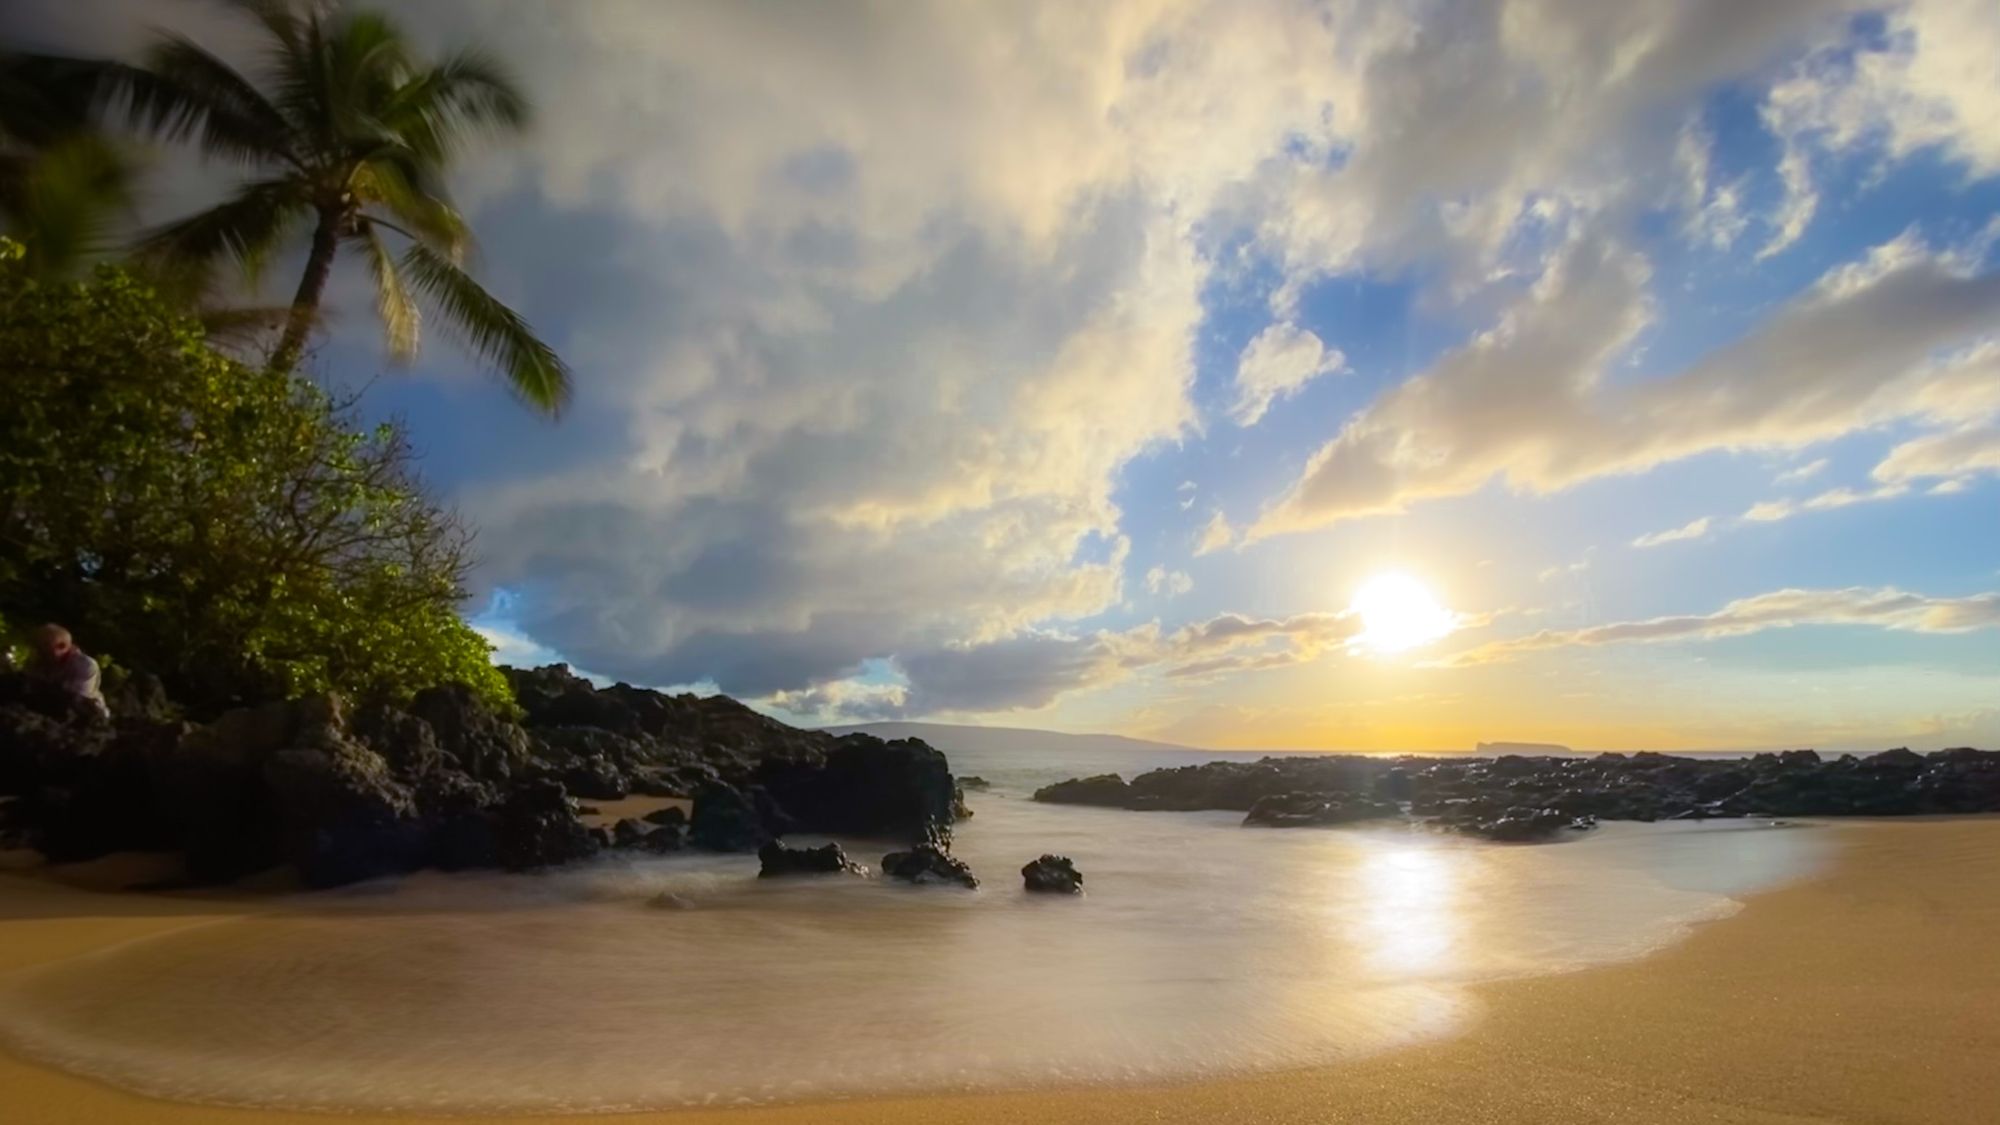 Aloha - Maui sunset